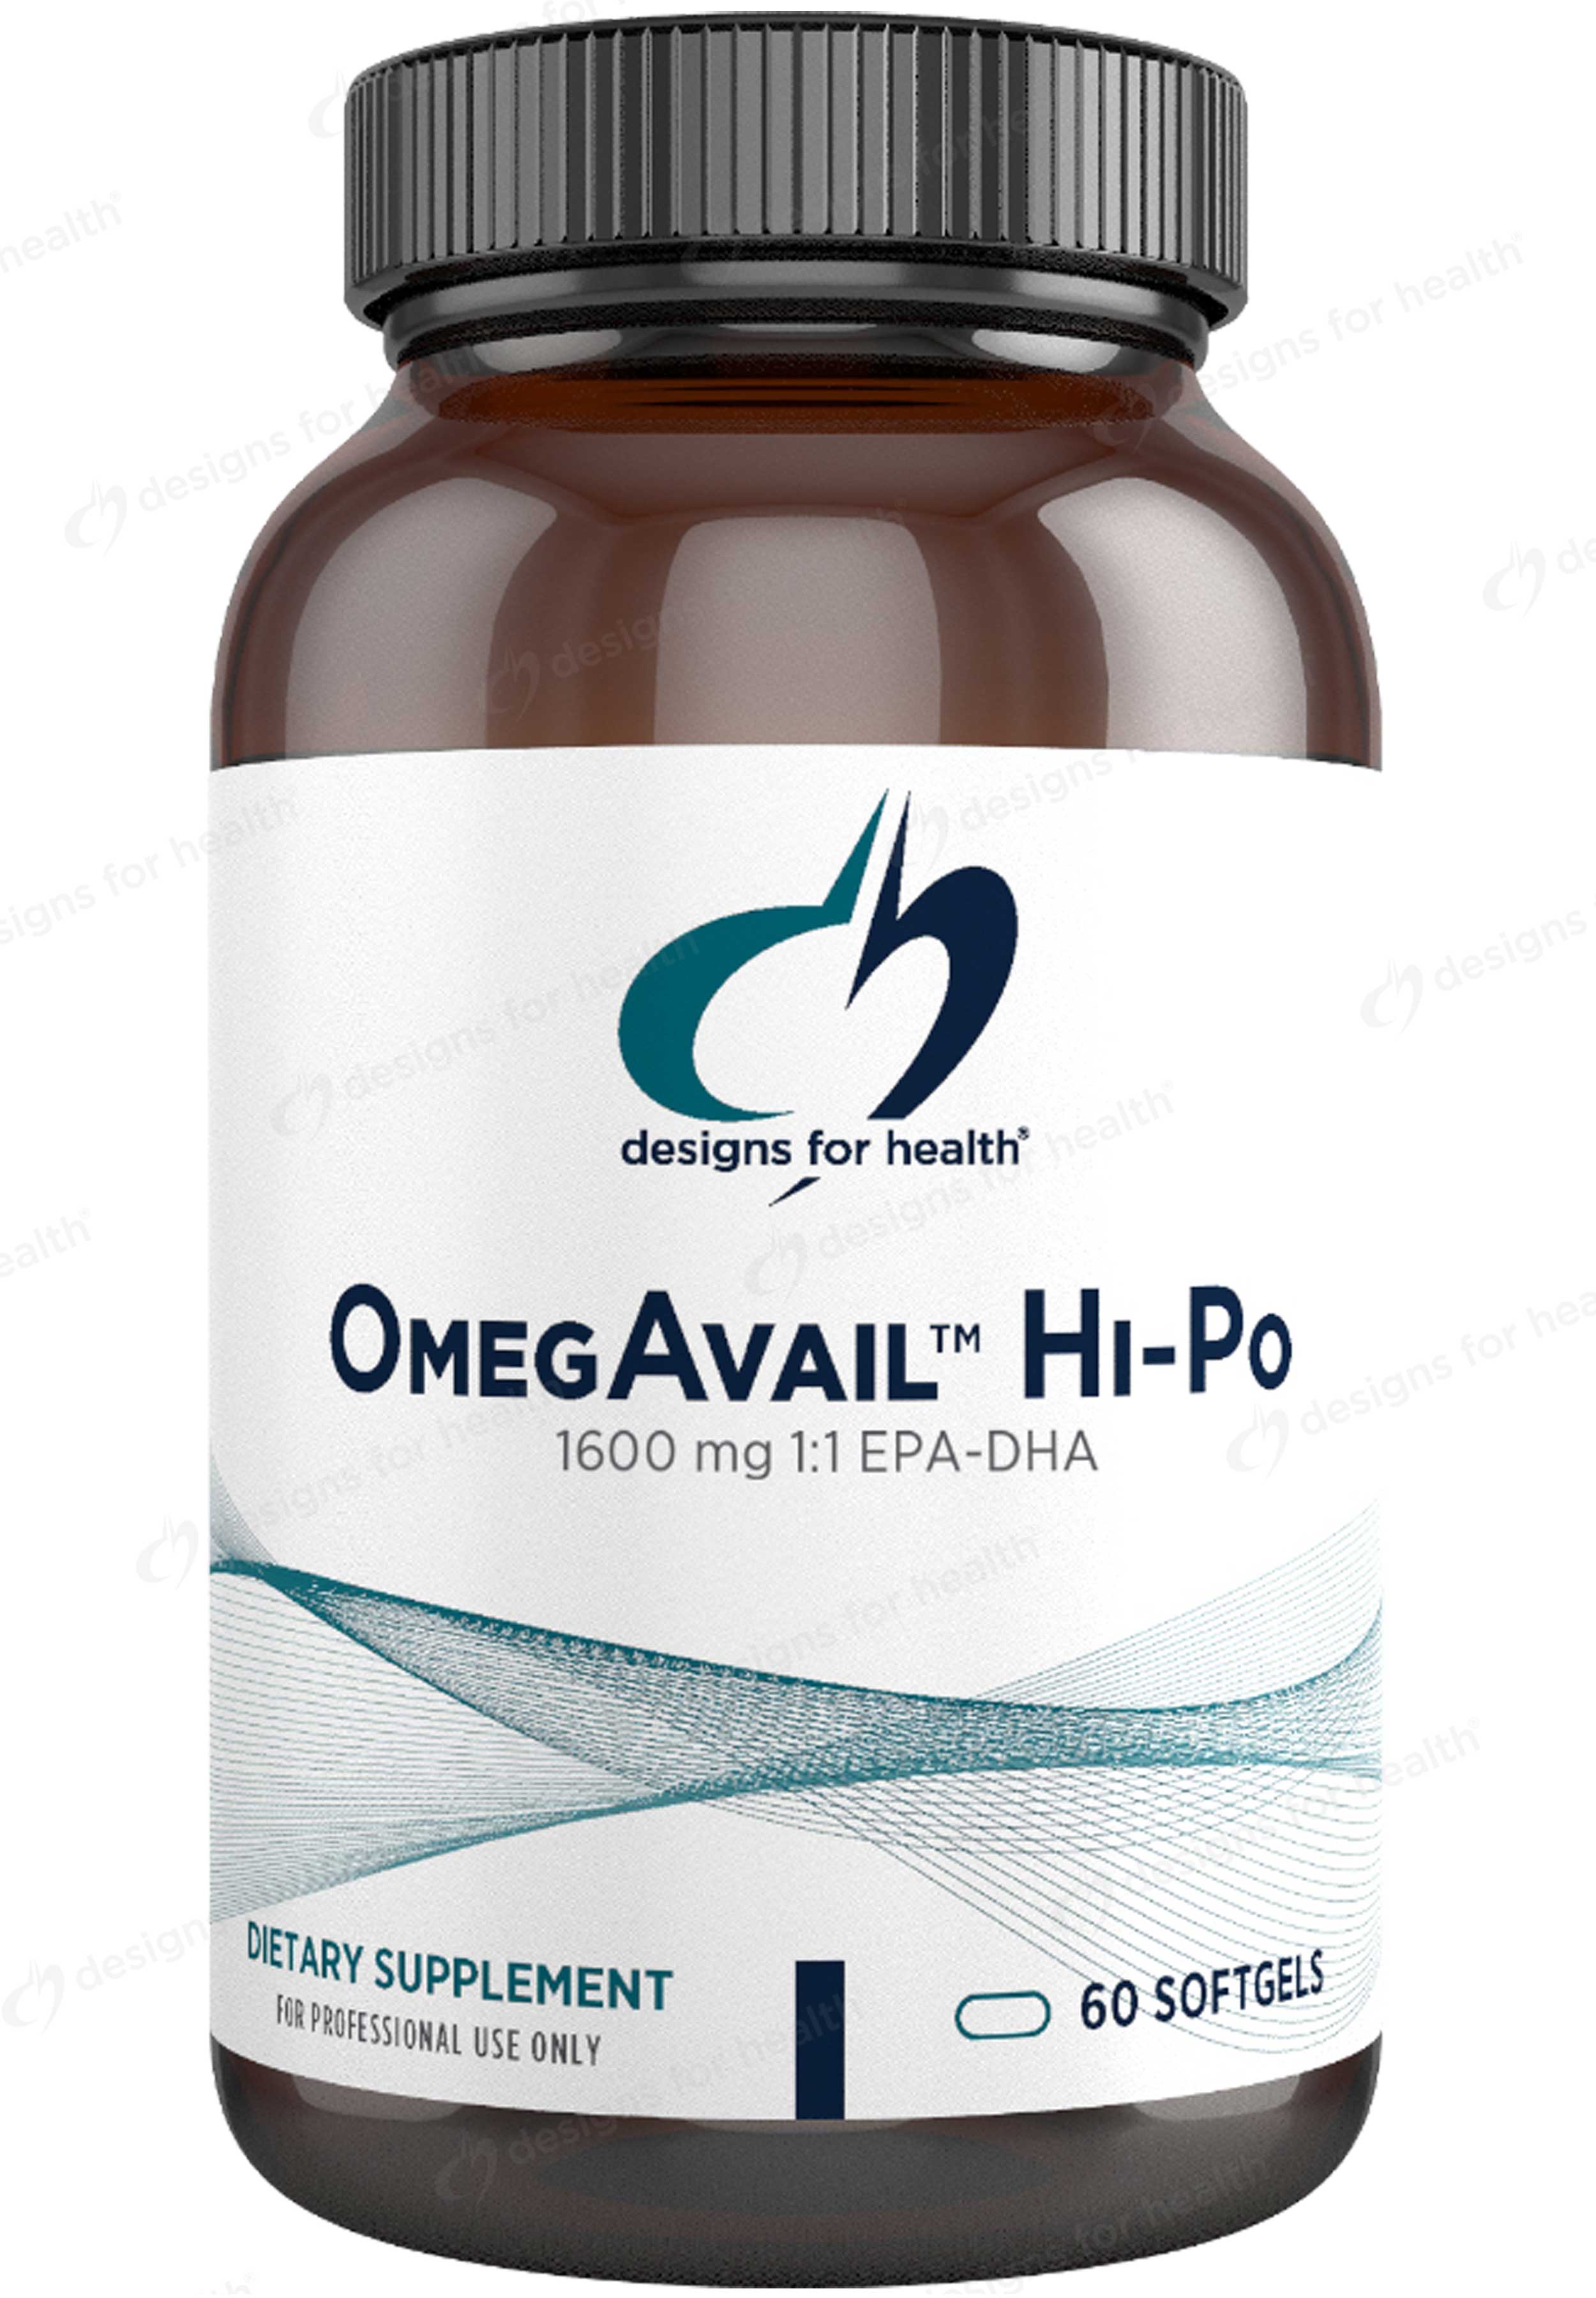 Designs for Health OmegAvail Hi-Po